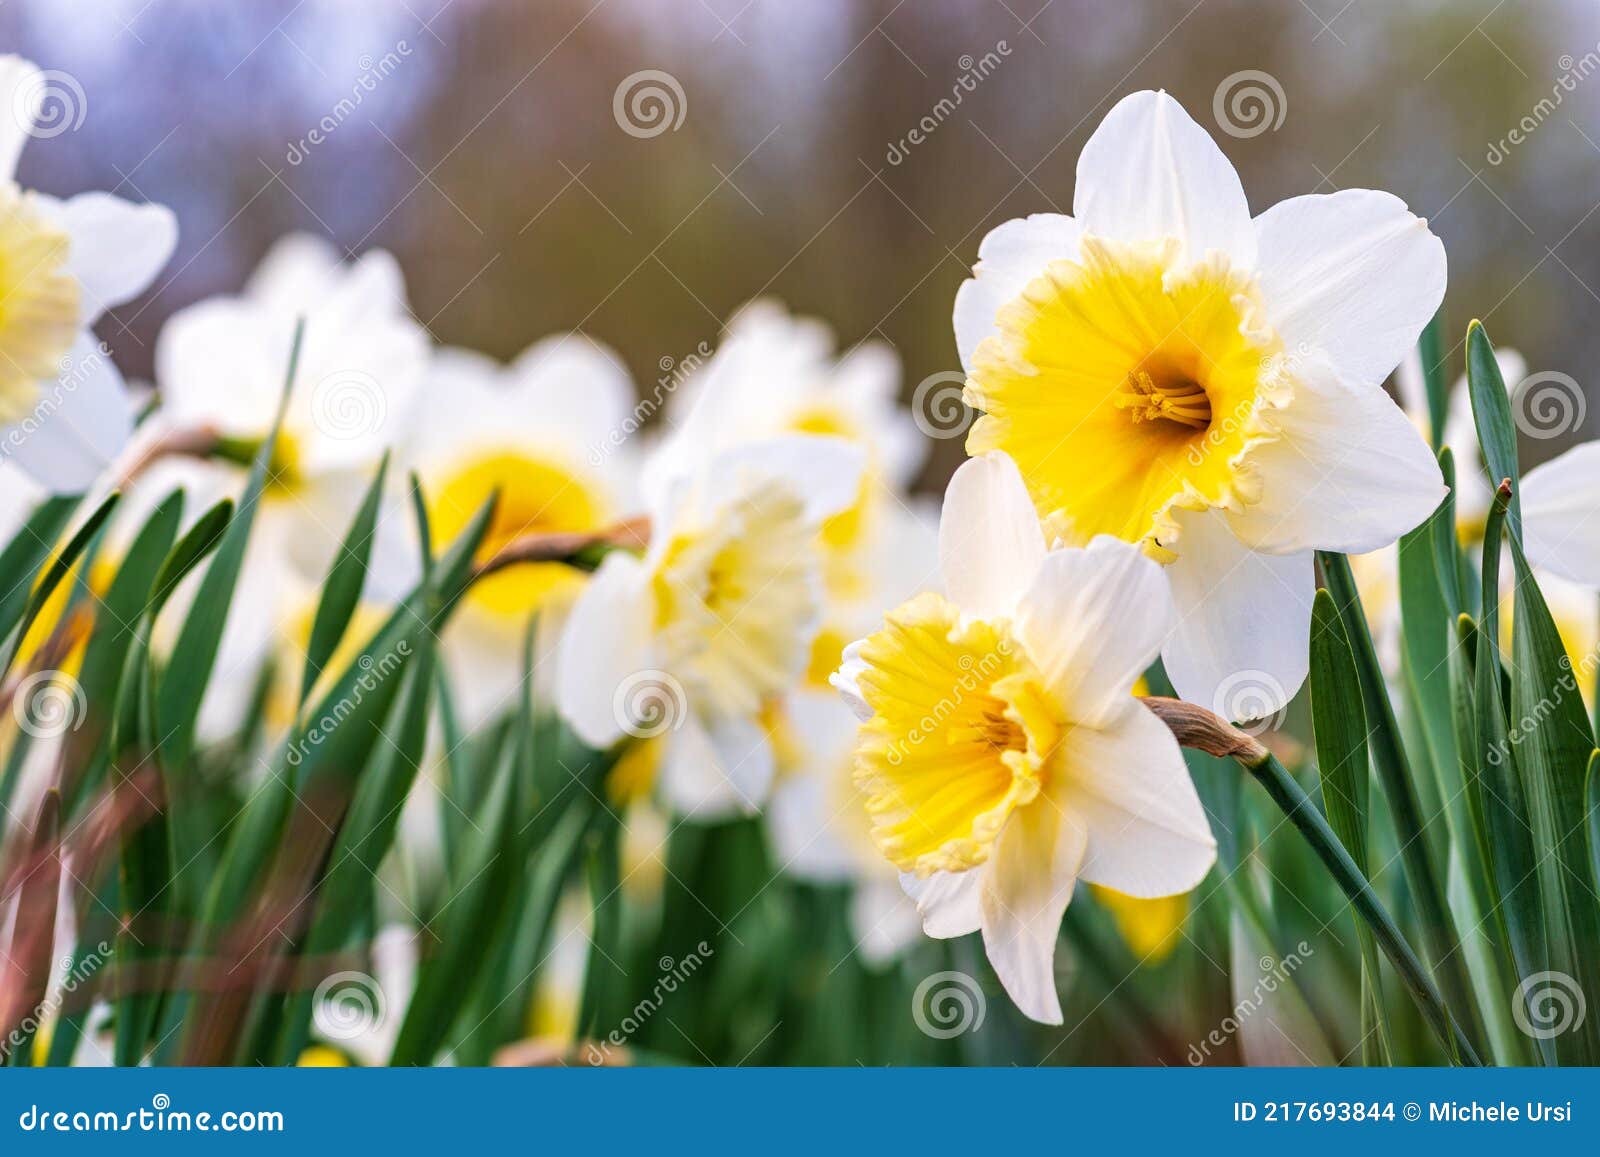 Merveilleux Jaune Et Blanc Fleur De Jonquille Narcisse Printemps Photo  stock - Image du jardin, normal: 217693844